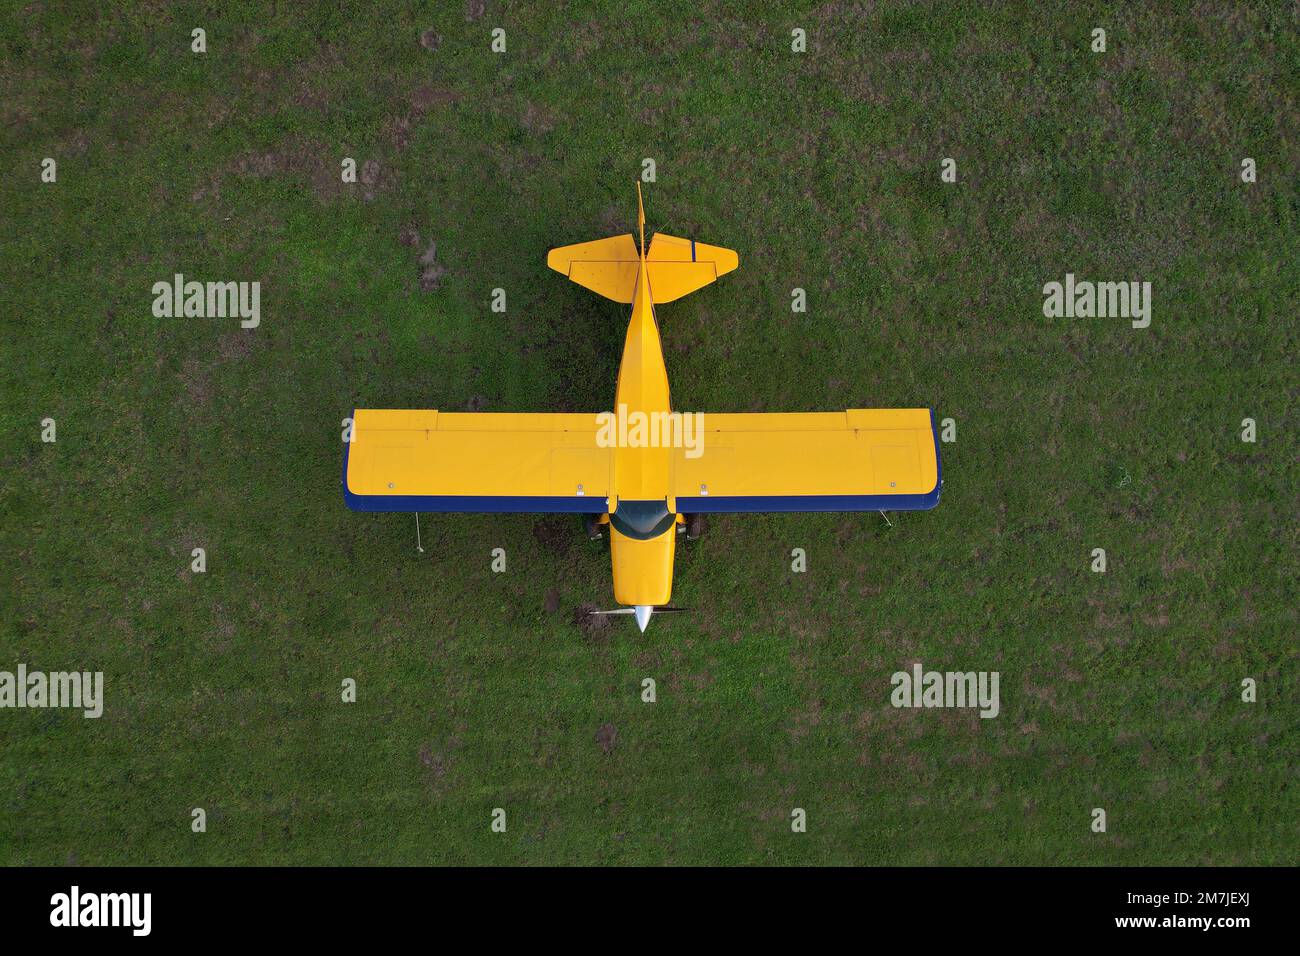 Kleines gelbes Flugzeug, das für Kurzstreckenflüge von oben gesehen wird und auf einem grünen Feld geparkt ist Stockfoto